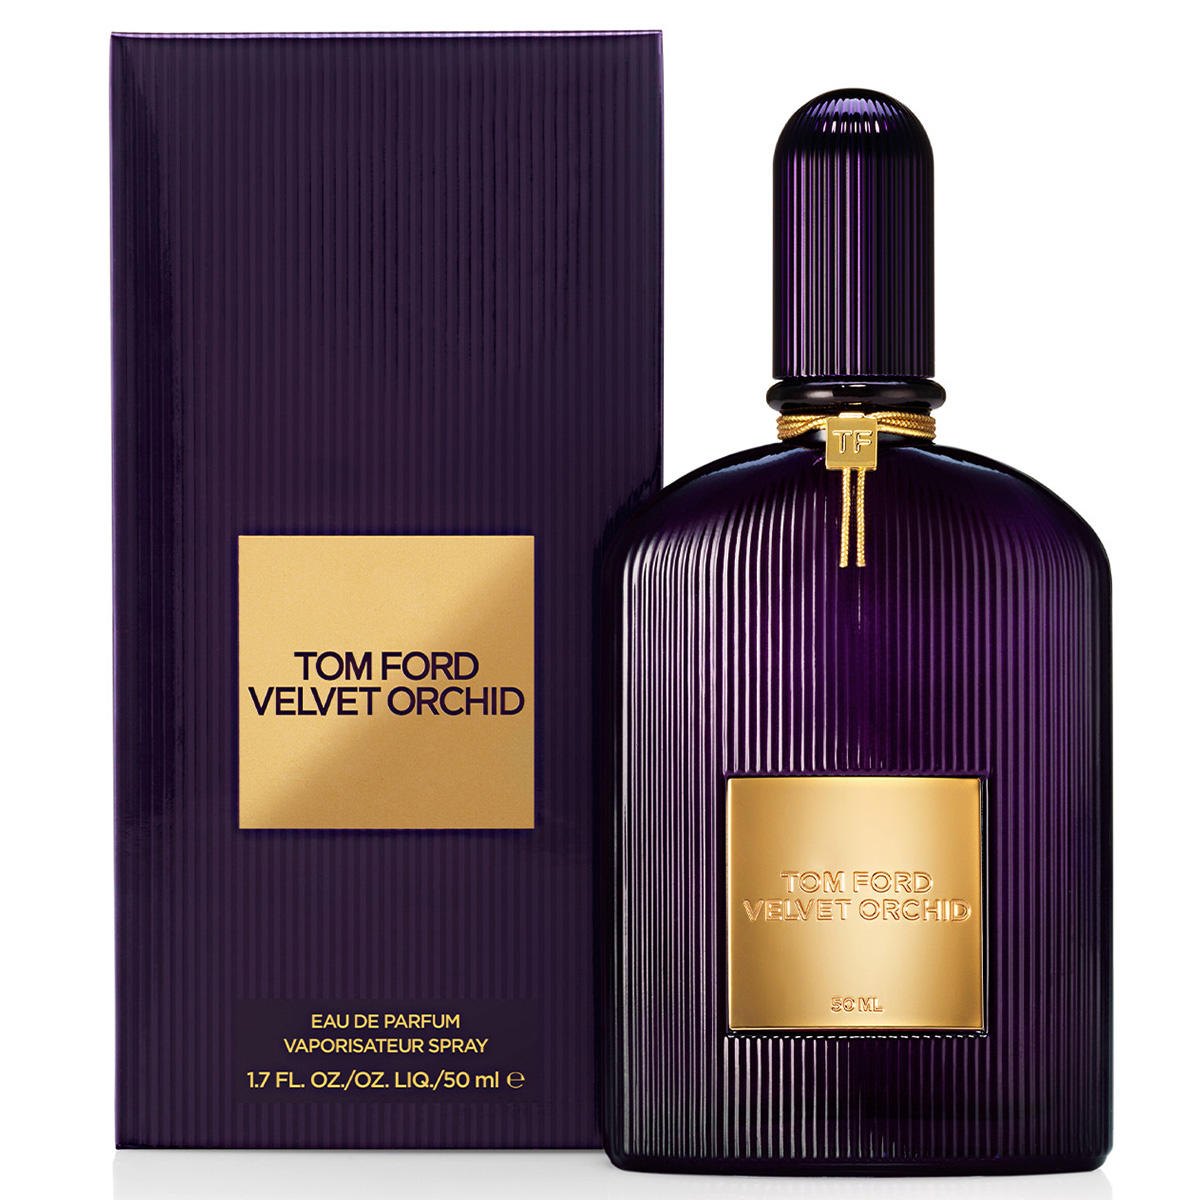 Tom Ford Velvet Orchid Eau de Parfum 50 ml - 2